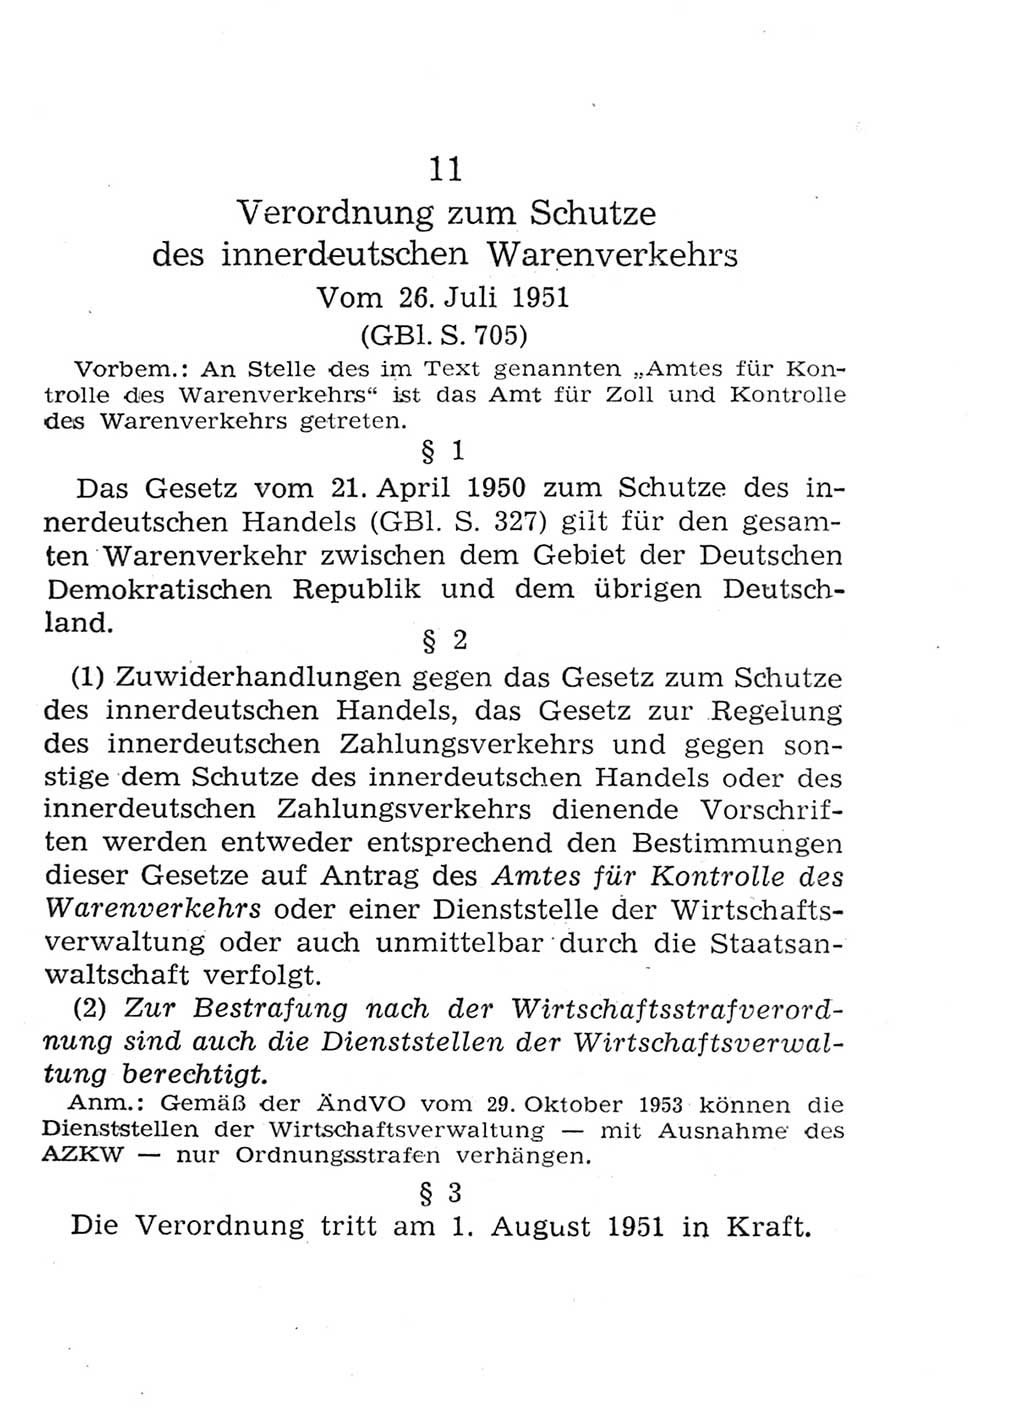 Strafgesetzbuch (StGB) und andere Strafgesetze [Deutsche Demokratische Republik (DDR)] 1957, Seite 279 (StGB Strafges. DDR 1957, S. 279)